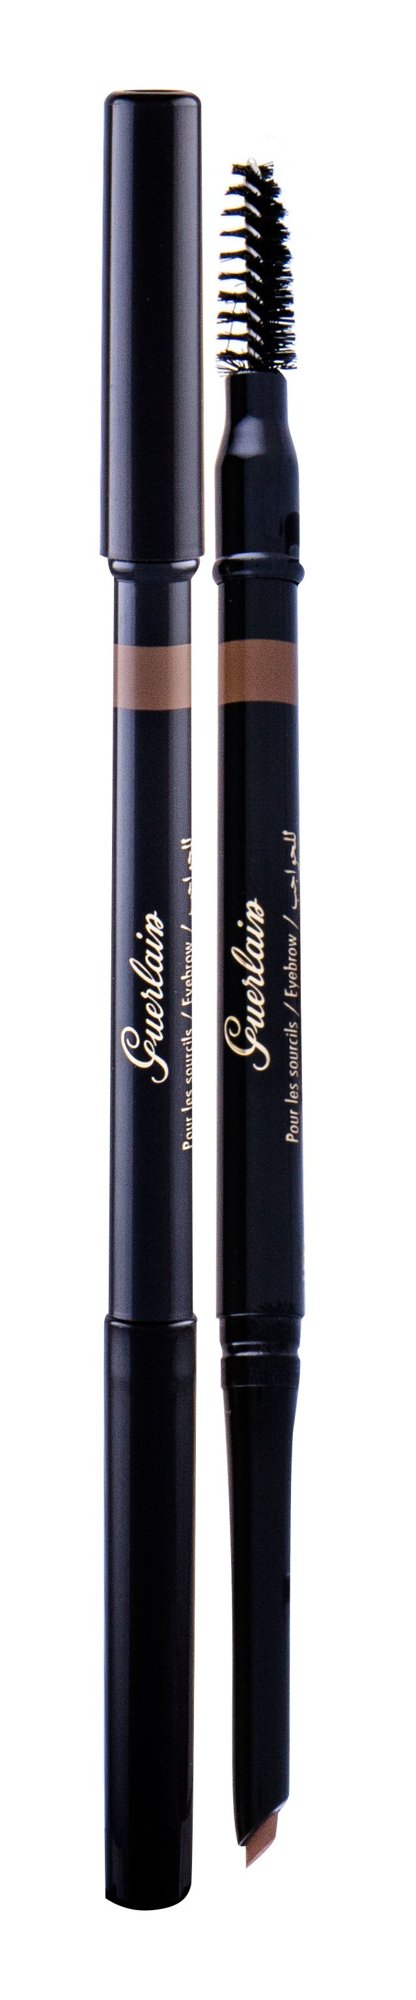 Guerlain The Eyebrow Pencil antakių pieštukas